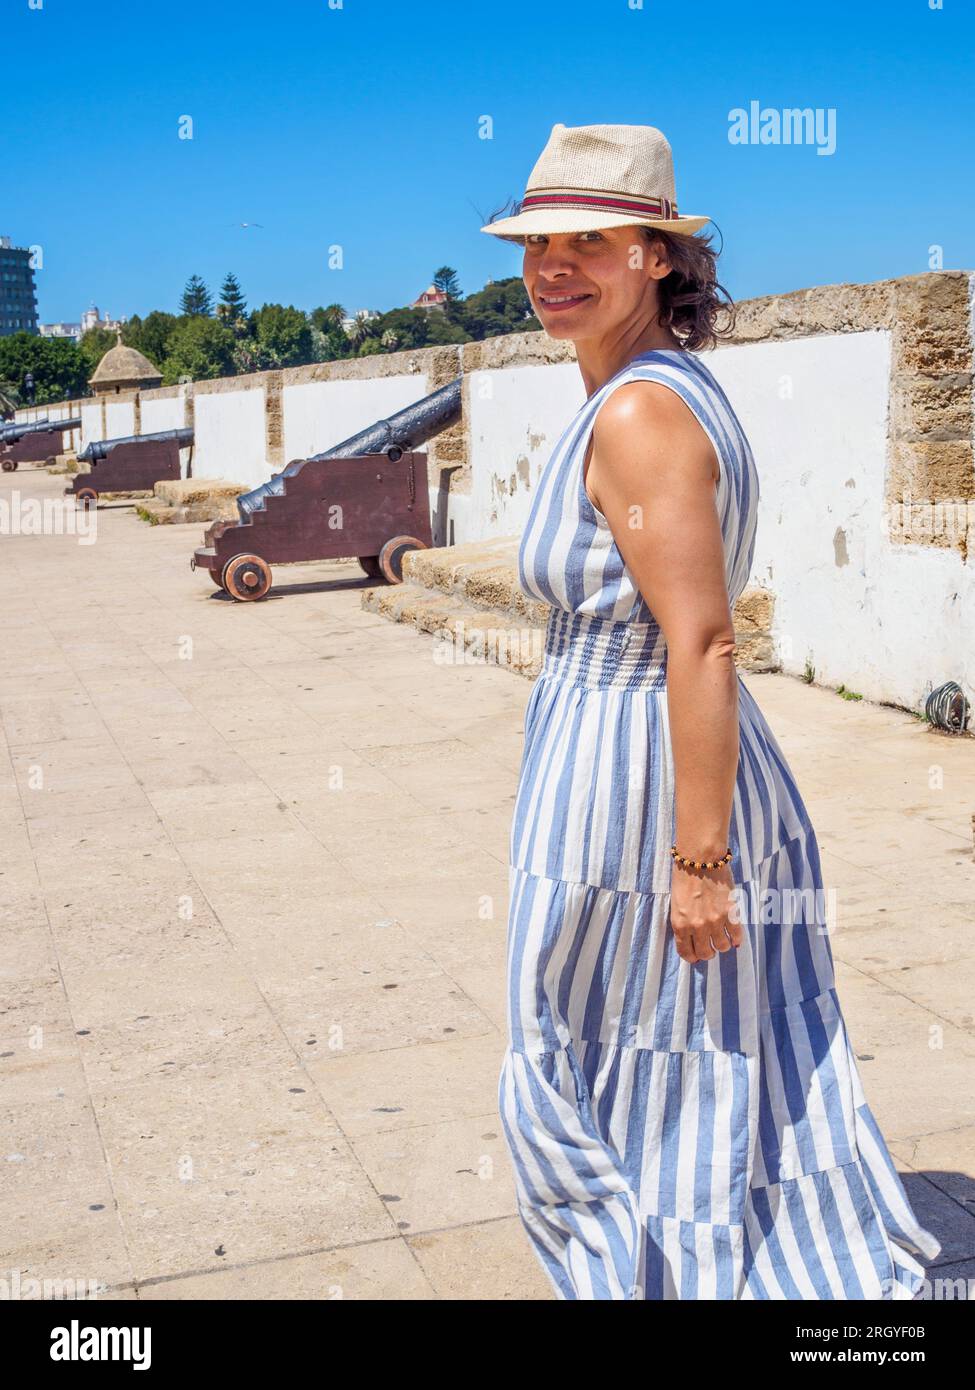 Lächelnder kaukasischer Tourist, der ein Sommerkleid und einen alten Strohhut trägt und auf einer antiken Latinamerikanischen Yachthafenpromenade spaziert. Stockfoto